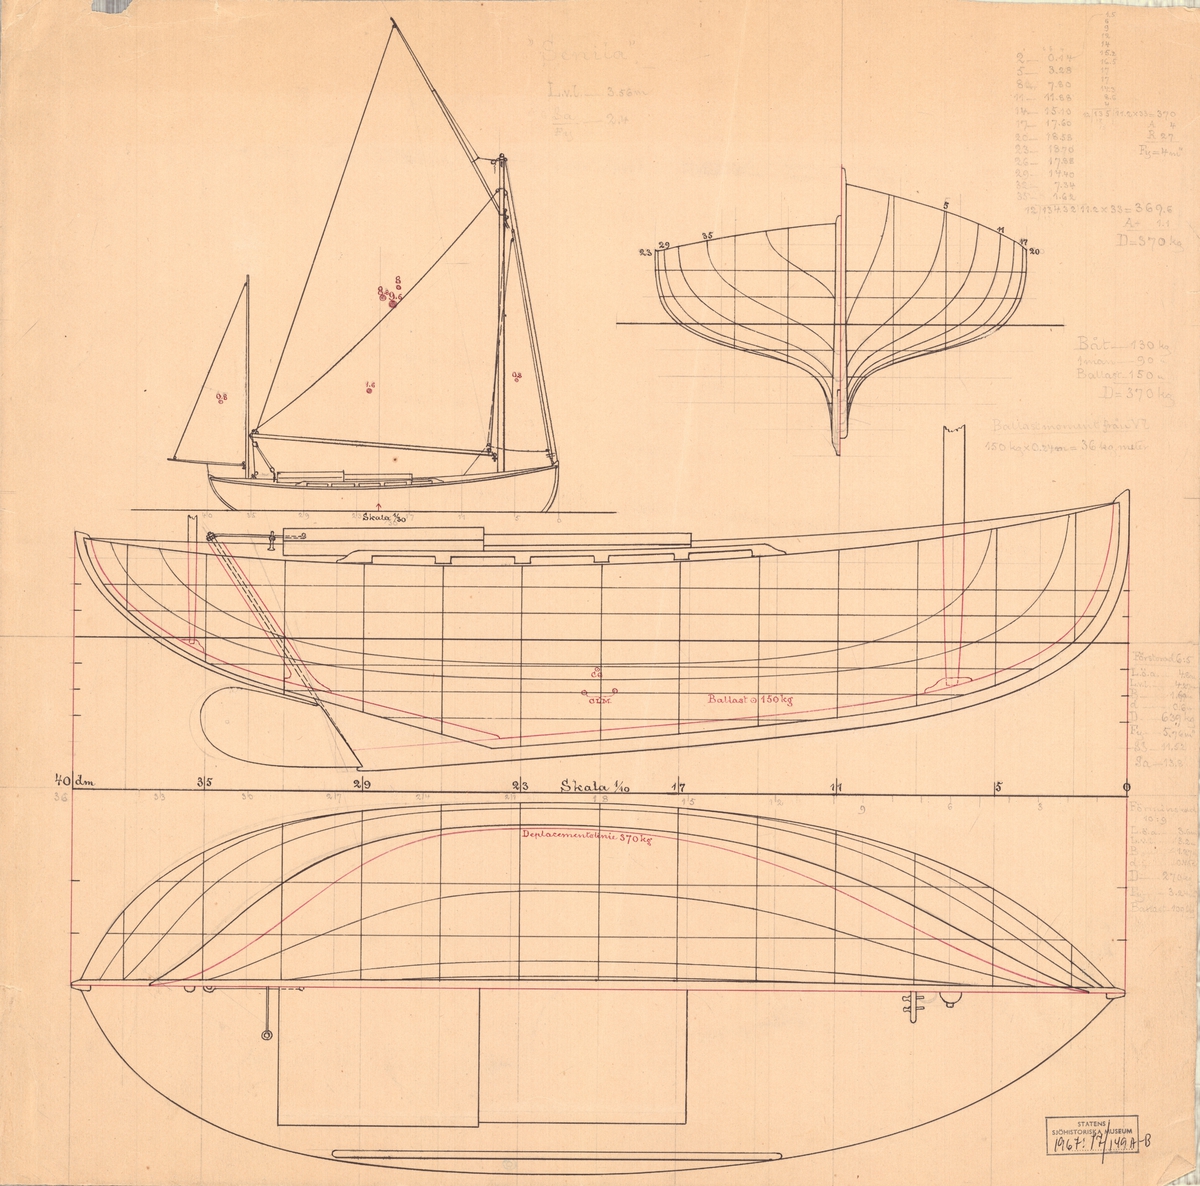 Tvåmastad segelbåt
Spantruta, rigg, profil och linjeritning